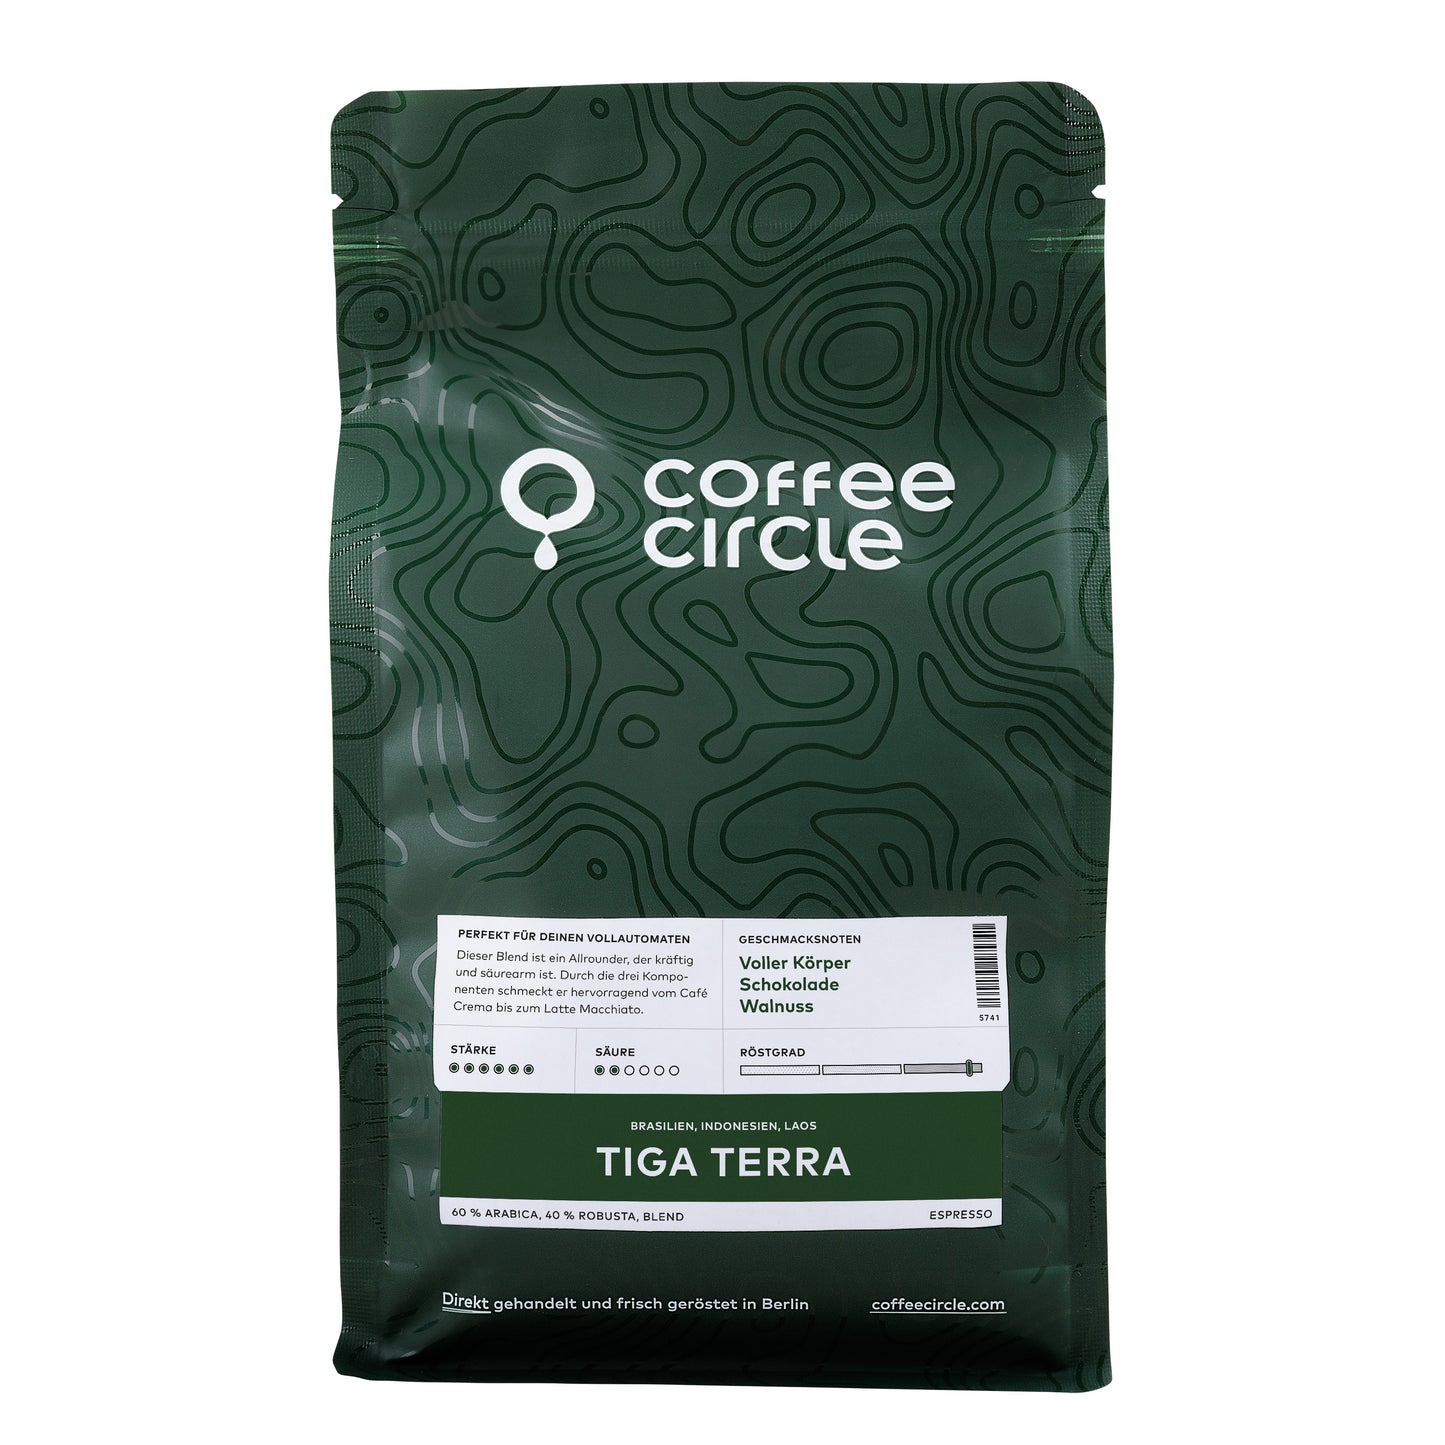 Tiga Terra Coffee & Espresso